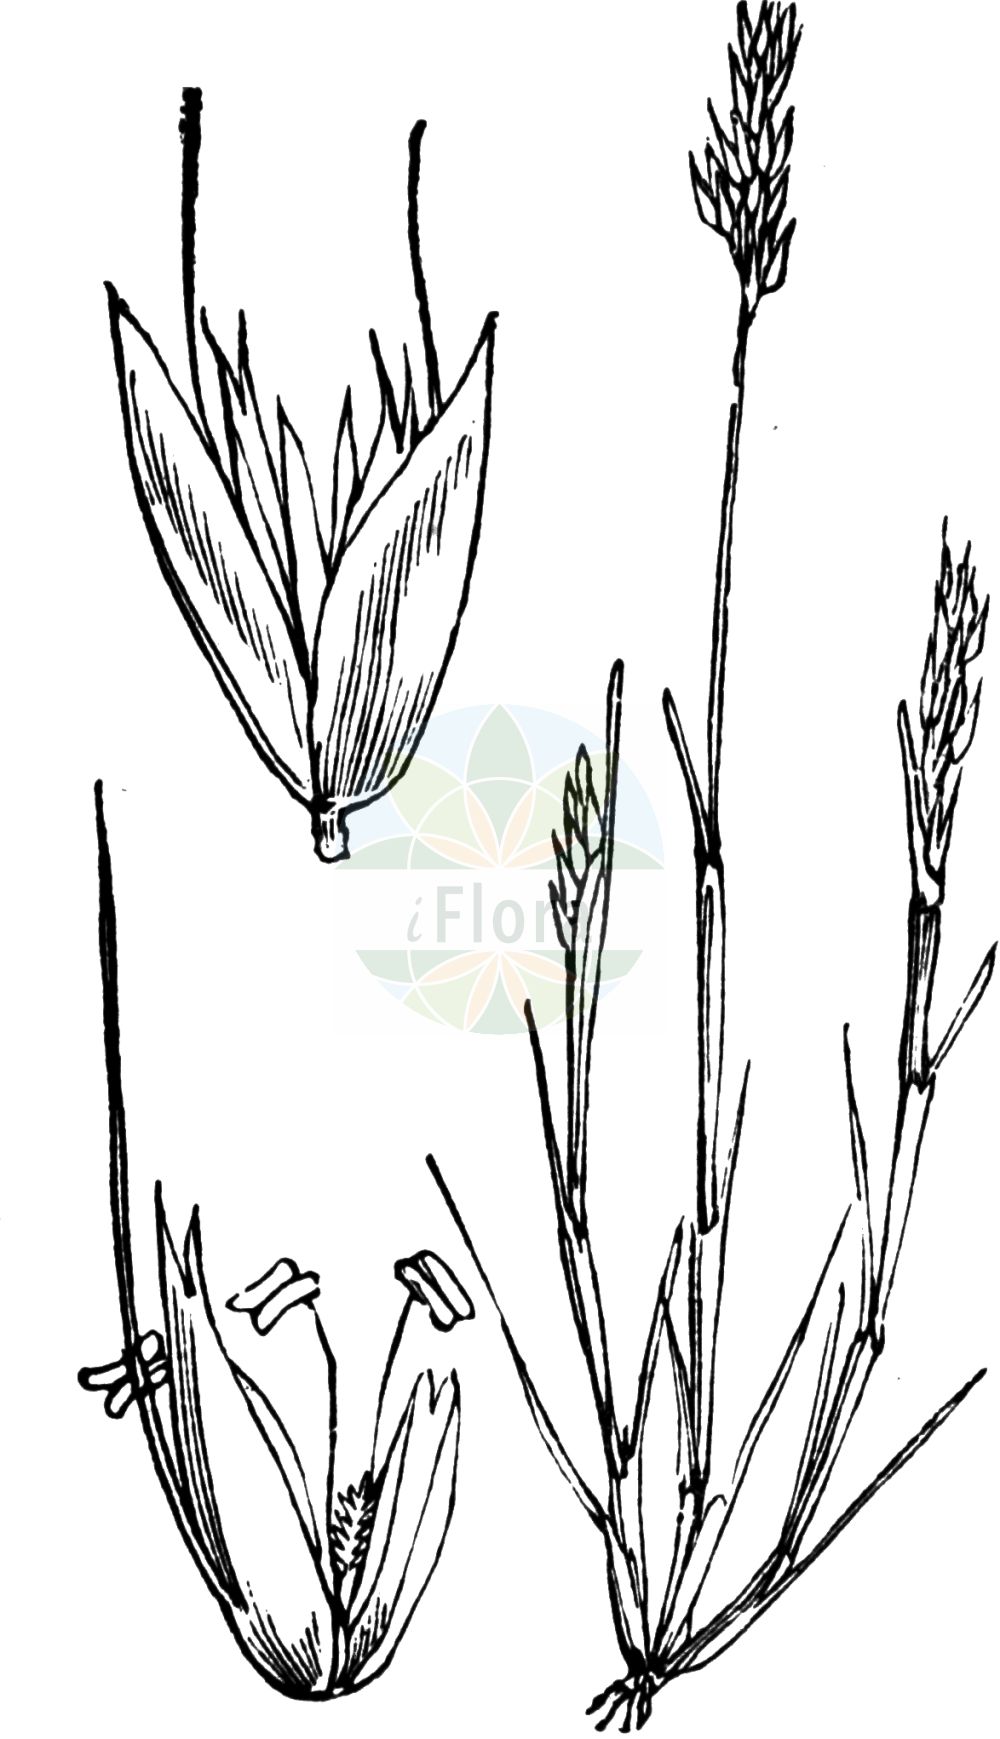 Historische Abbildung von Aira praecox (Frühe Haferschmiele - Early Hair-grass). Das Bild zeigt Blatt, Bluete, Frucht und Same. ---- Historical Drawing of Aira praecox (Frühe Haferschmiele - Early Hair-grass). The image is showing leaf, flower, fruit and seed.(Aira praecox,Frühe Haferschmiele,Early Hair-grass,Aira praecox,Avena praecox,Fruehe Haferschmiele,Frueher Nelkenhafer,Early Hair-grass,Yellow Hairgrass,Small Hairgrass,Aira,Haferschmiele,Hair-grass,Poaceae,Süßgräser,Grass family,Blatt,Bluete,Frucht,Same,leaf,flower,fruit,seed,Fitch et al. (1880))